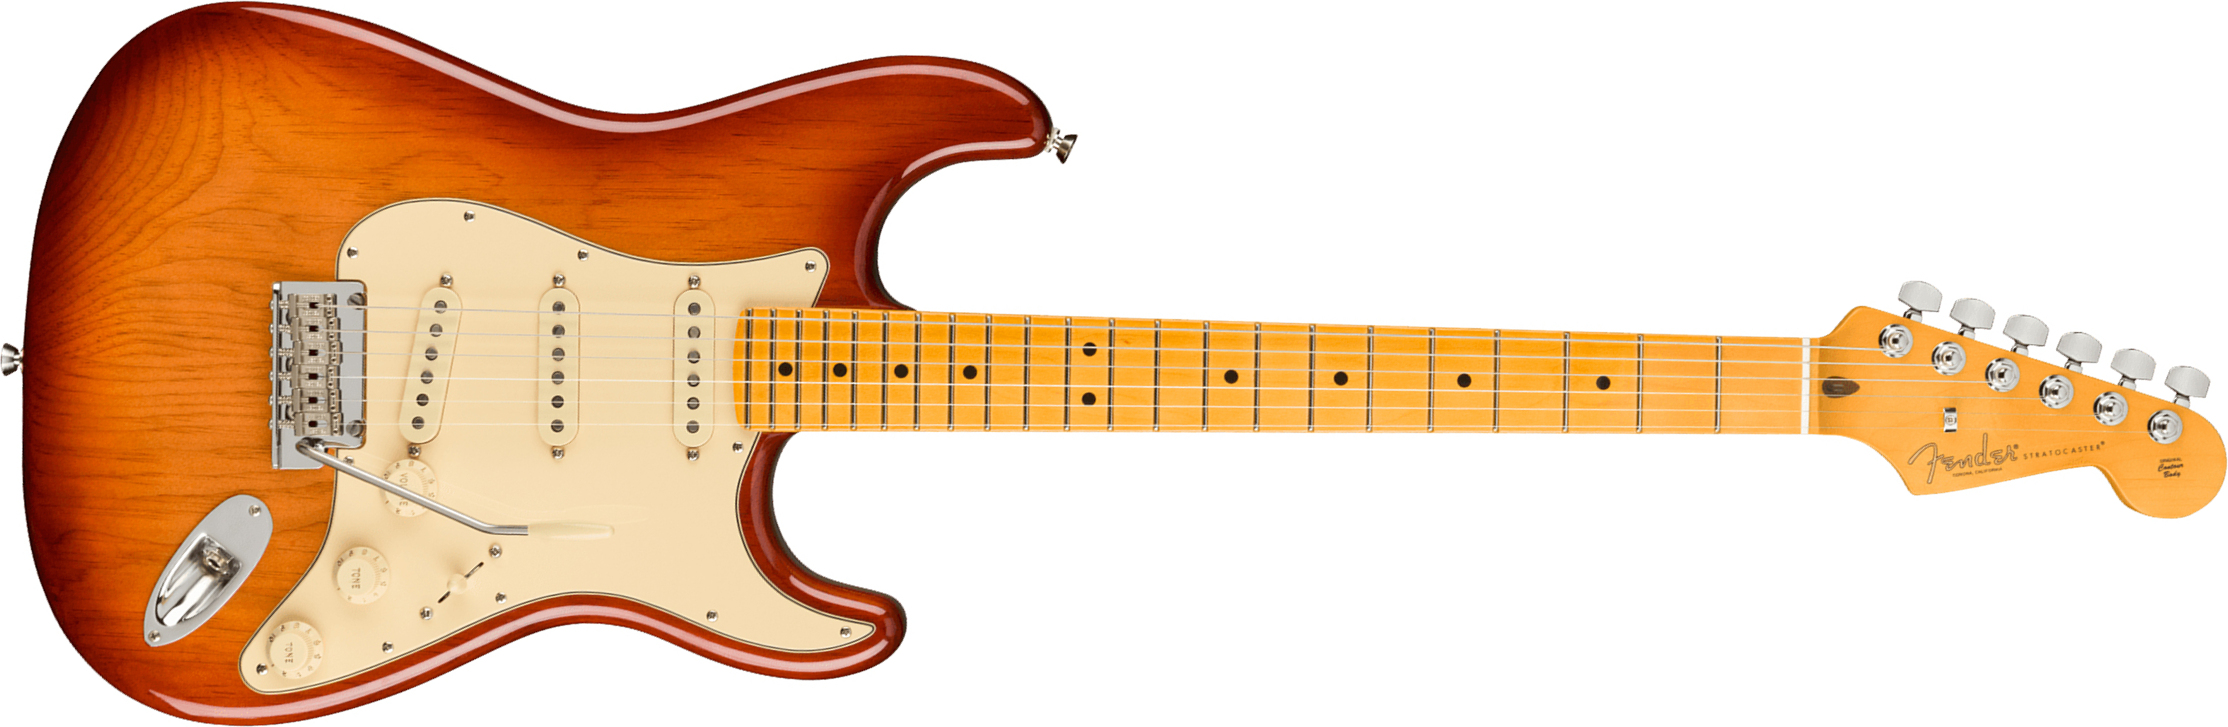 Fender Strat American Professional Ii Usa Mn - Sienna Sunburst - Elektrische gitaar in Str-vorm - Main picture